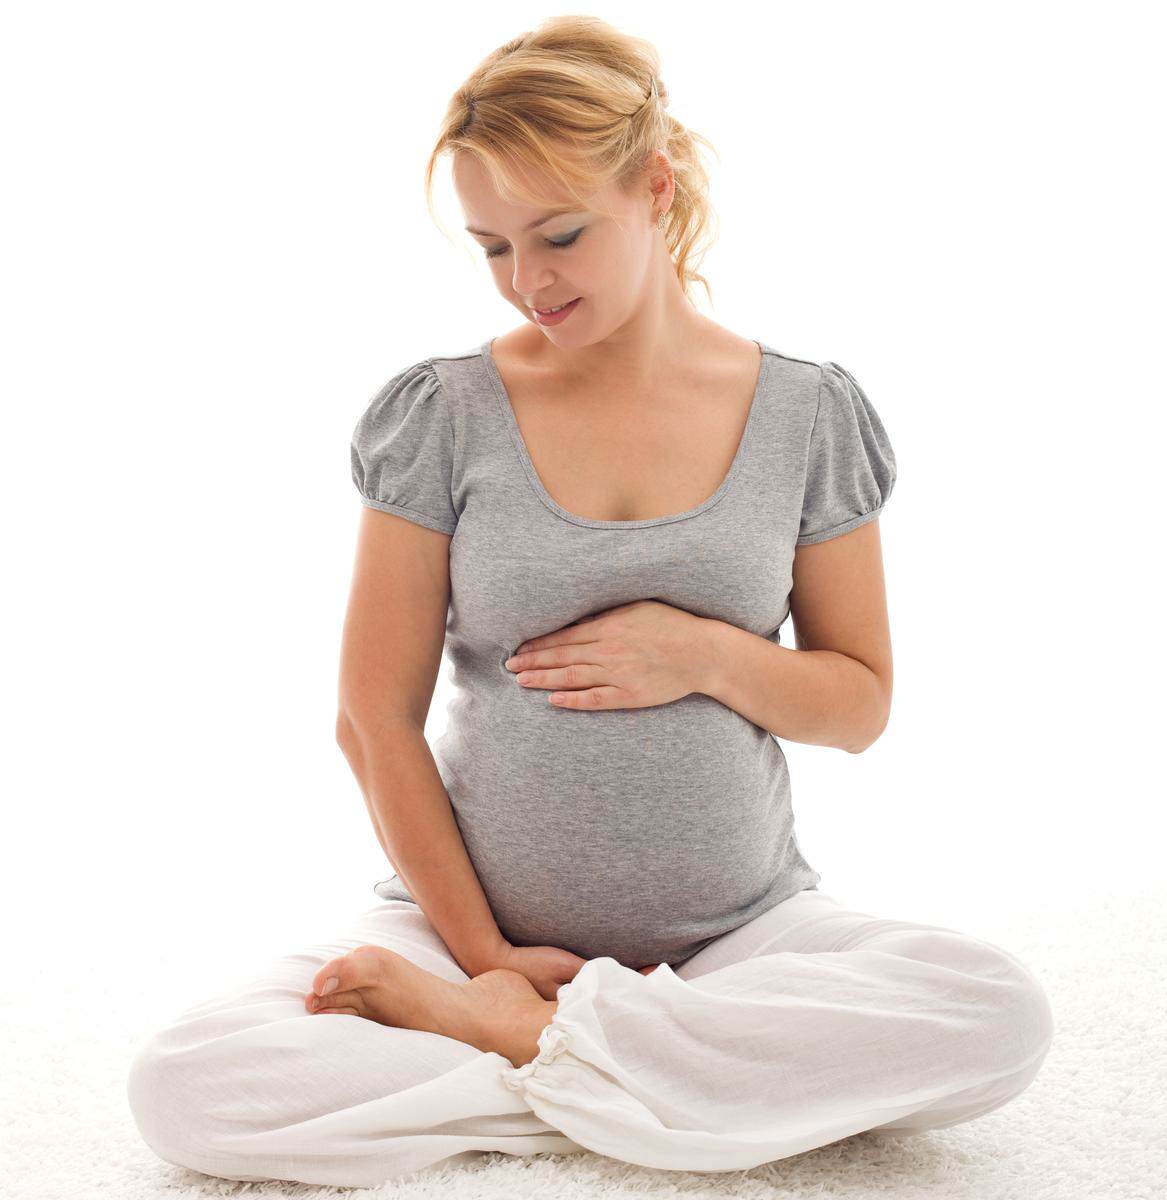 Икота у плода во время беременности: нужно ли обращаться к врачу